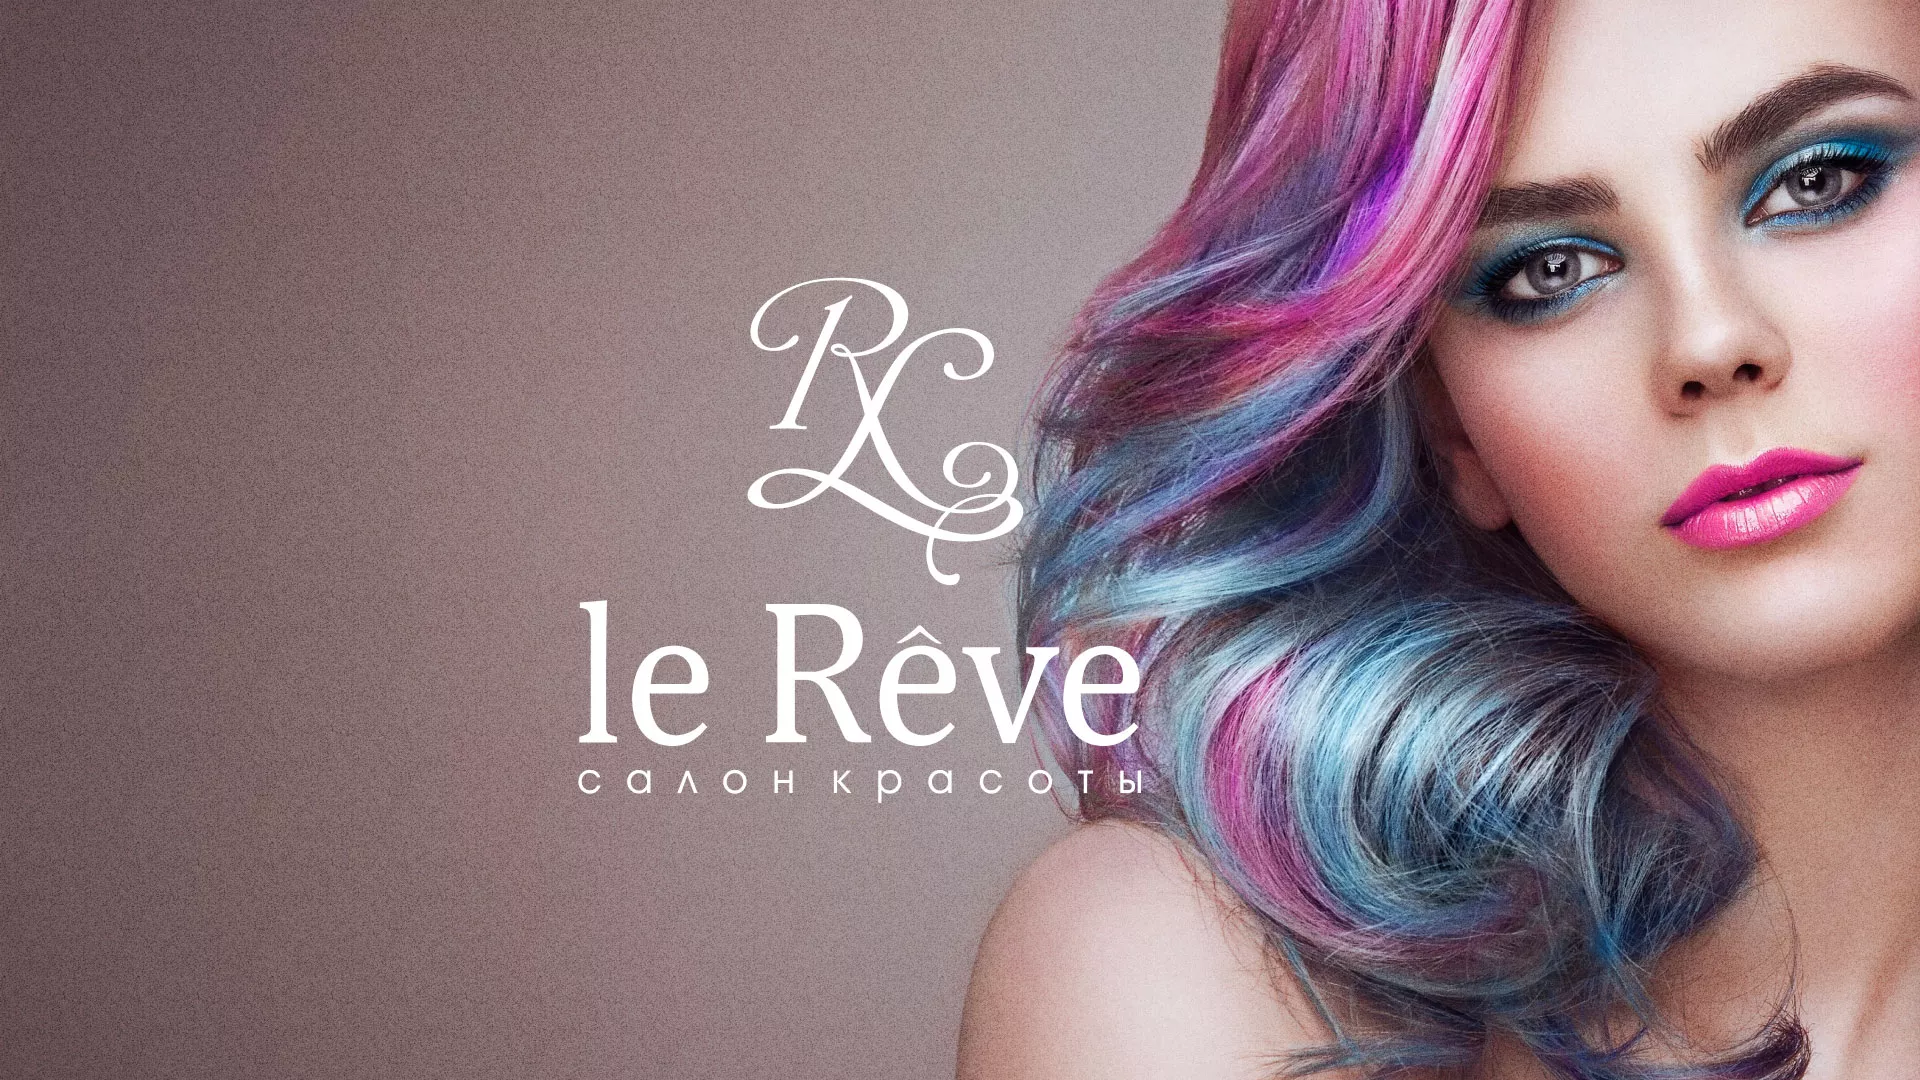 Создание сайта для салона красоты «Le Reve» в Данилове